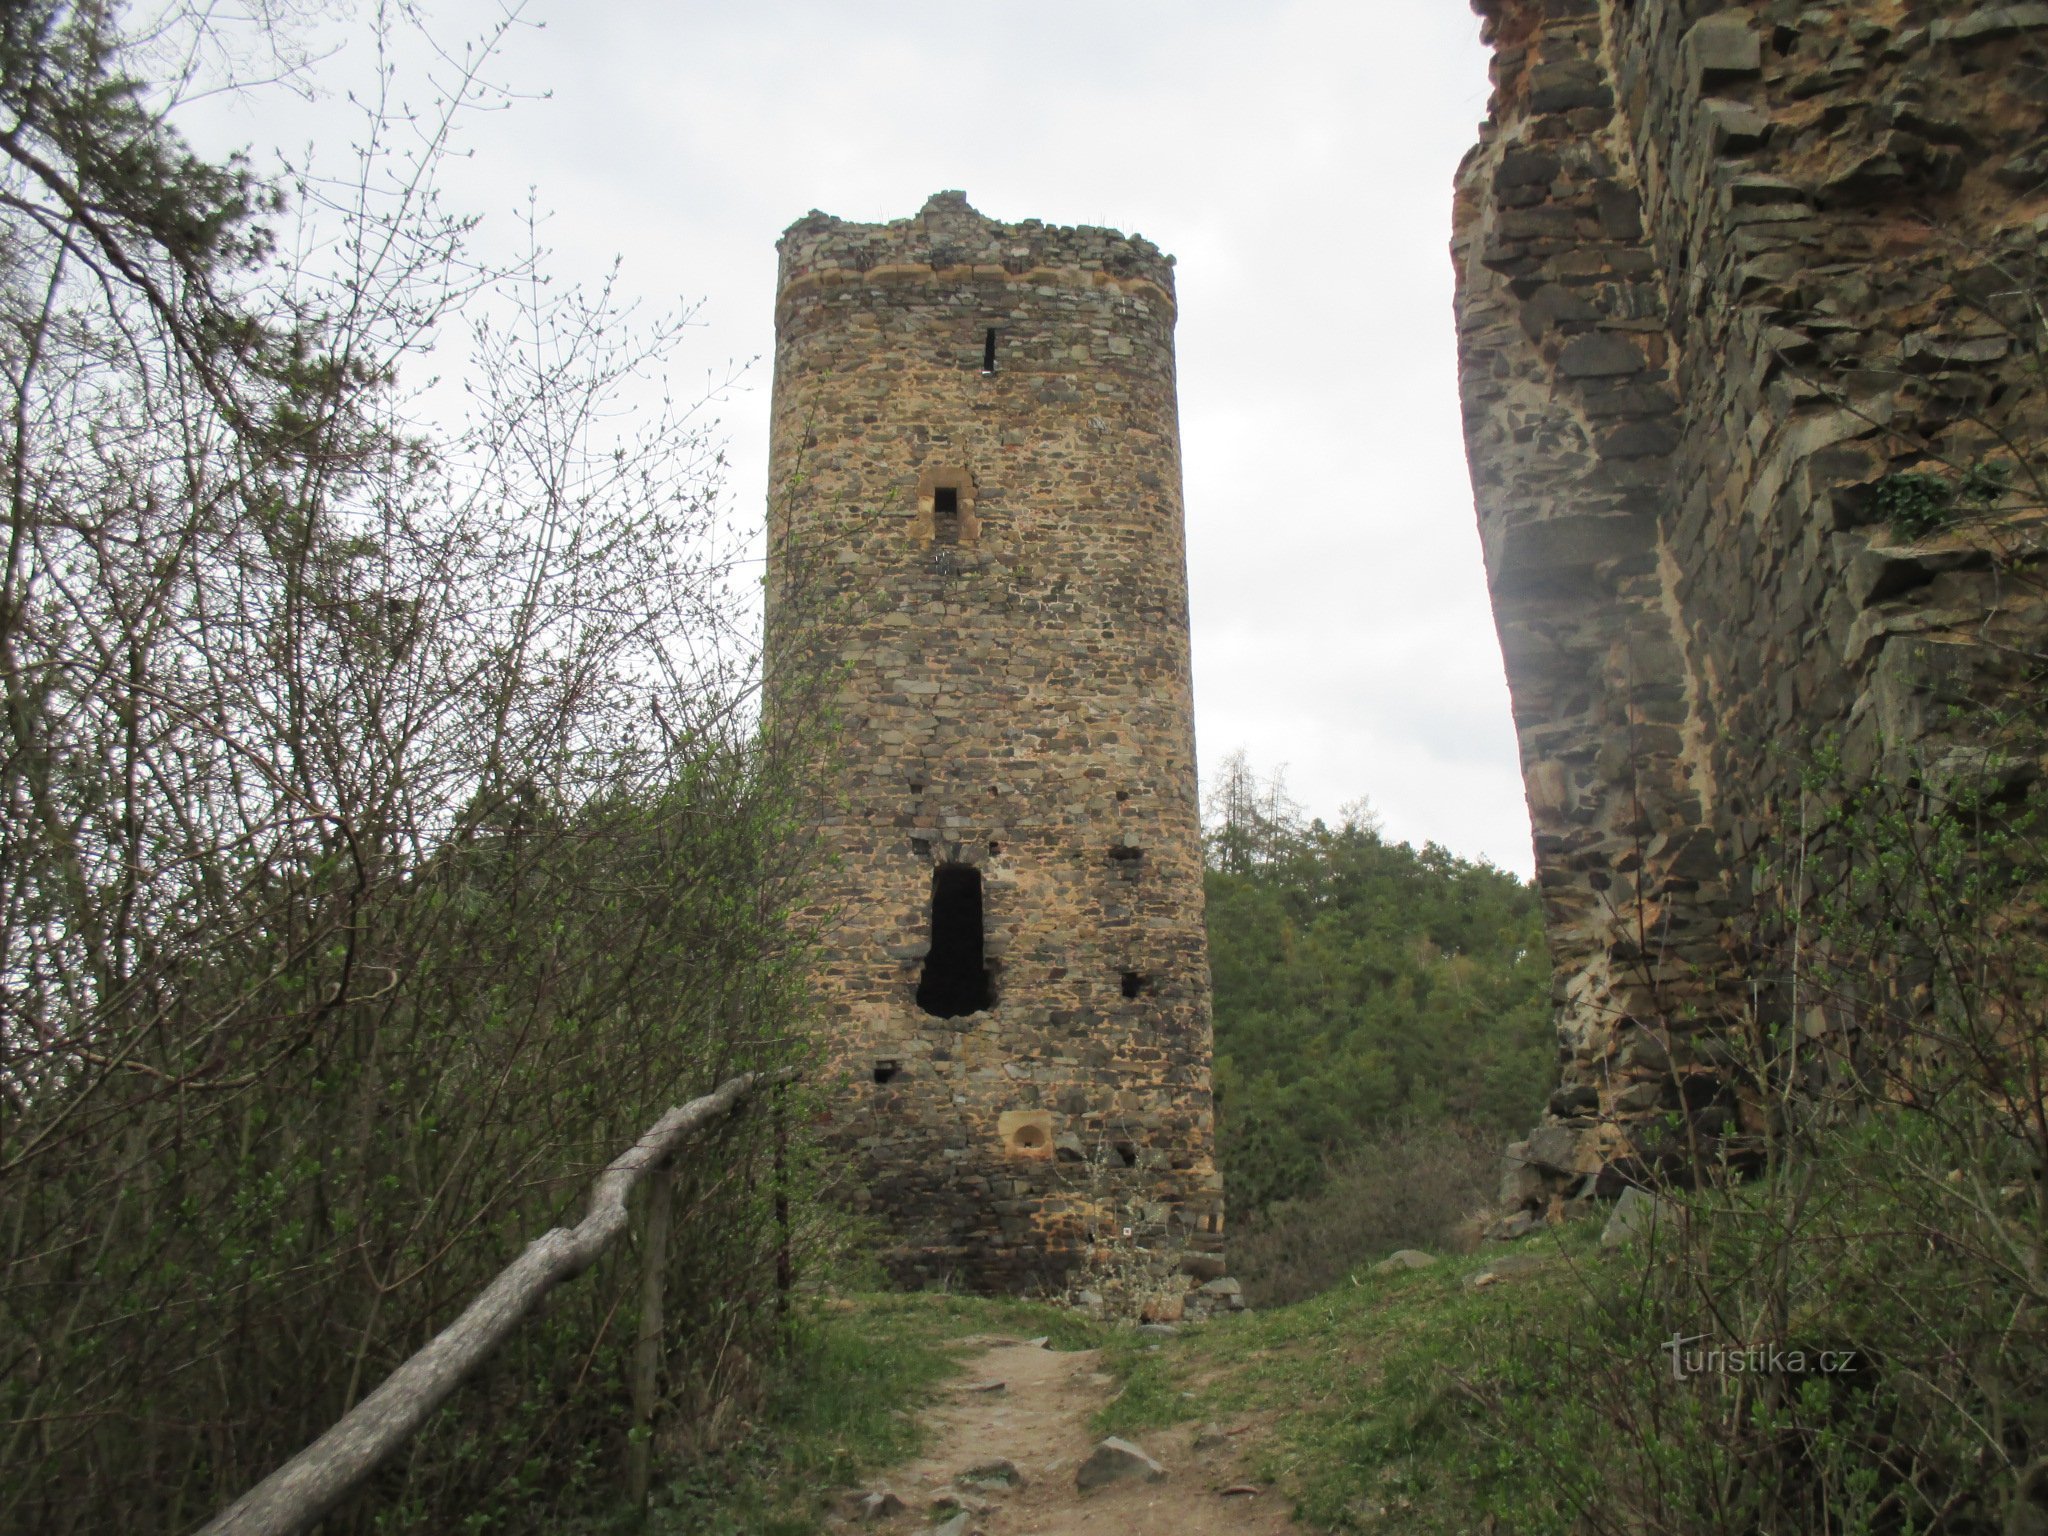 Lâu đài Libštejn và Havel's Rock